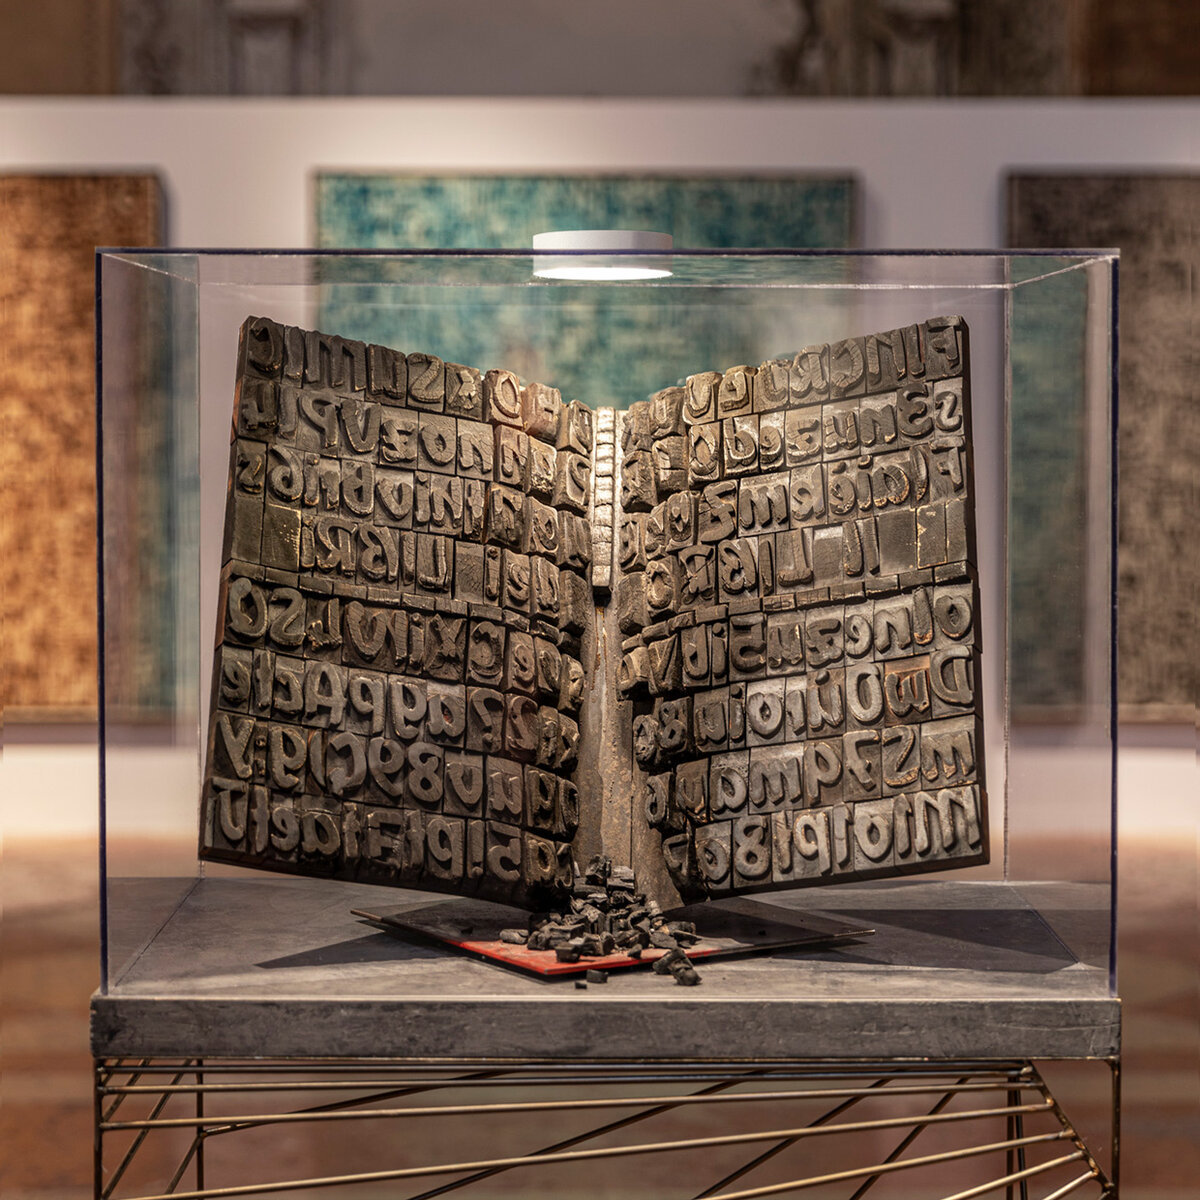 Ausstellung „La Scrittura come Enigma“ | © Davide Groppi srl | All Rights Reserved